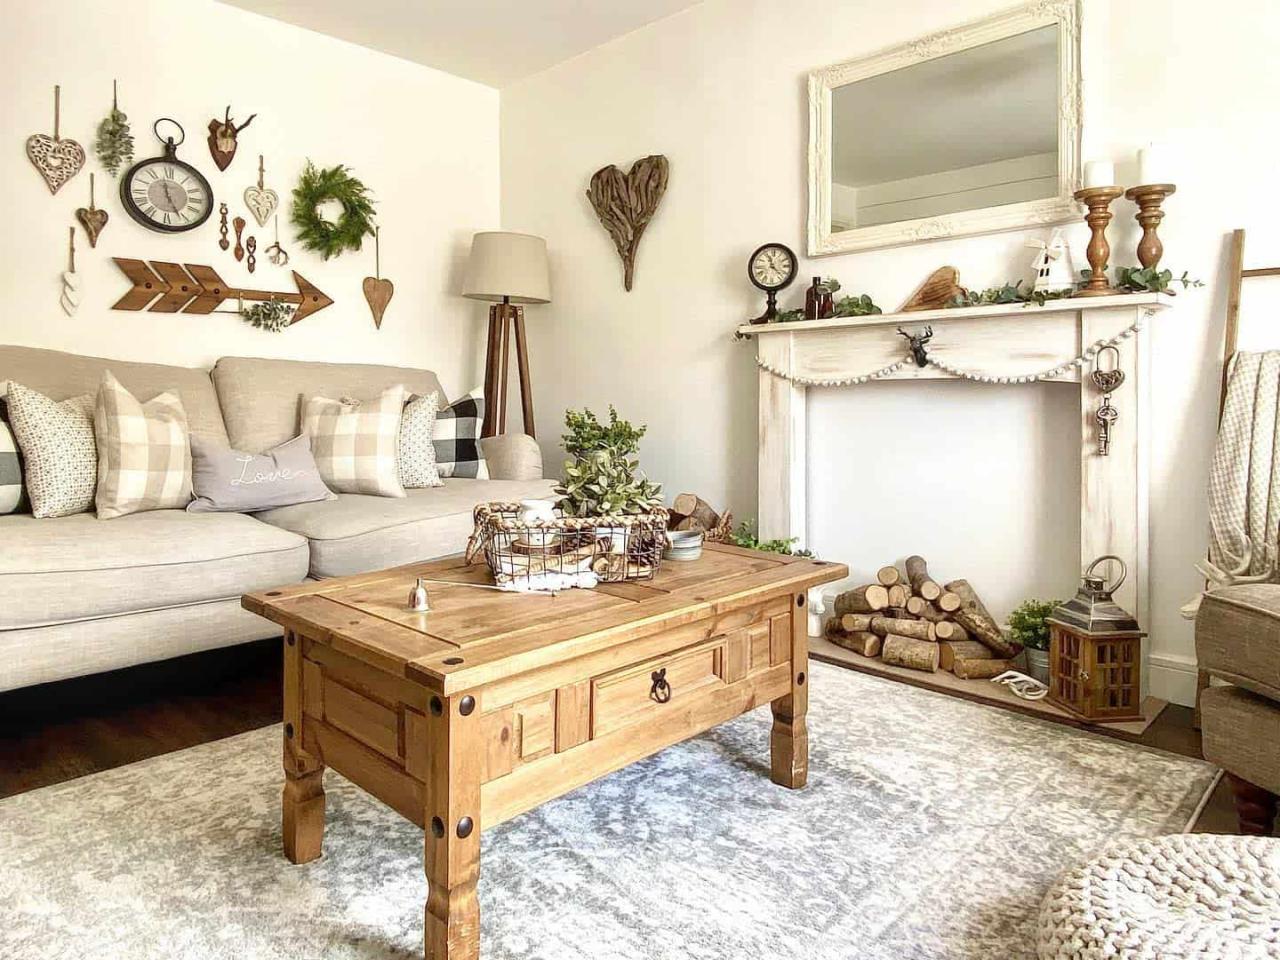 Farmhouse Living Room Design Ideas for a Cozy Country Retreat